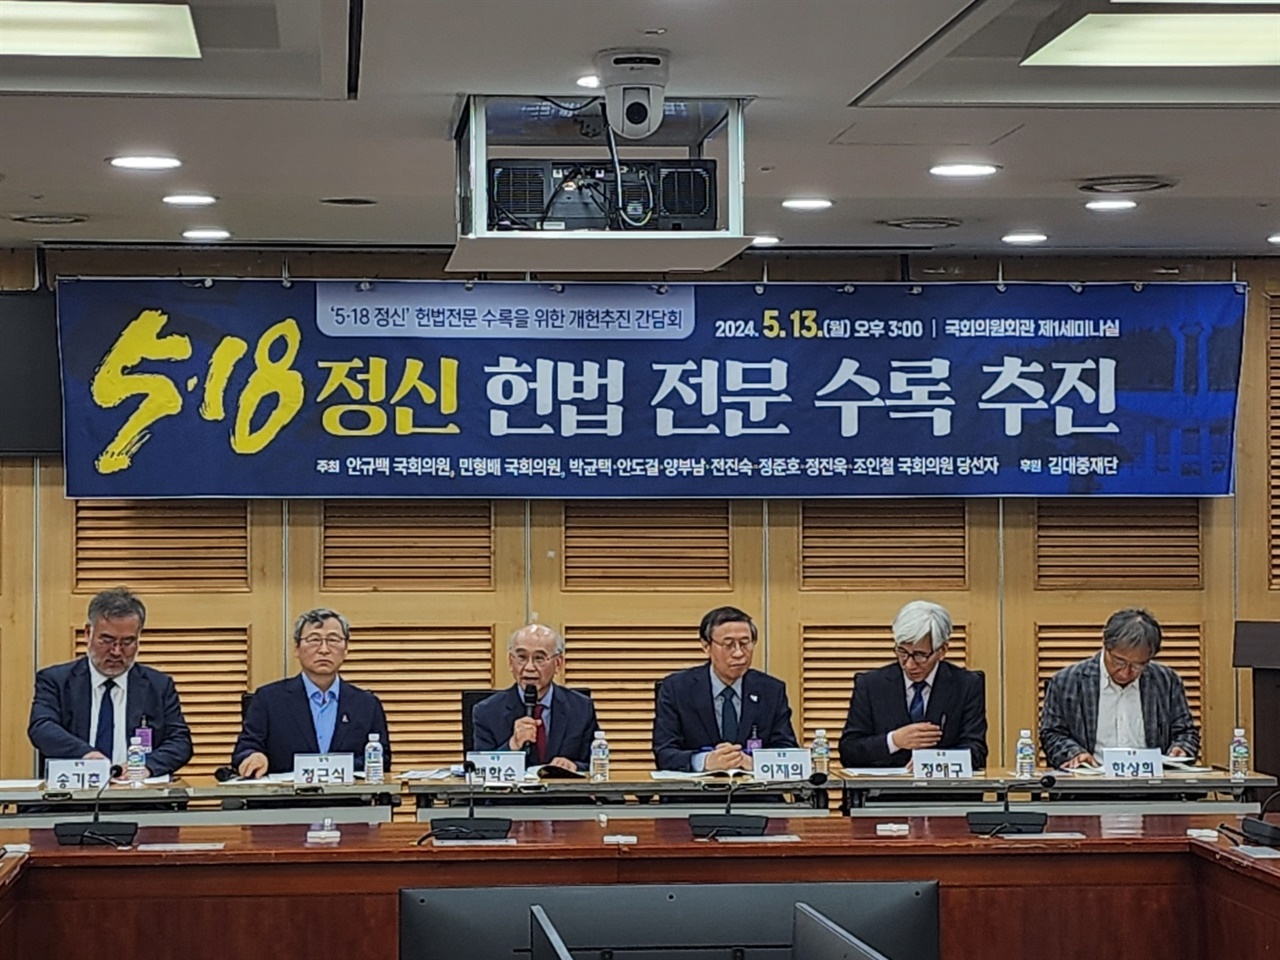 13일 오후 국회의원회관 제1세미나실에서는 '518정신' 헌법전문 수록을 위한 개헌추진 간담회가 열렸다.